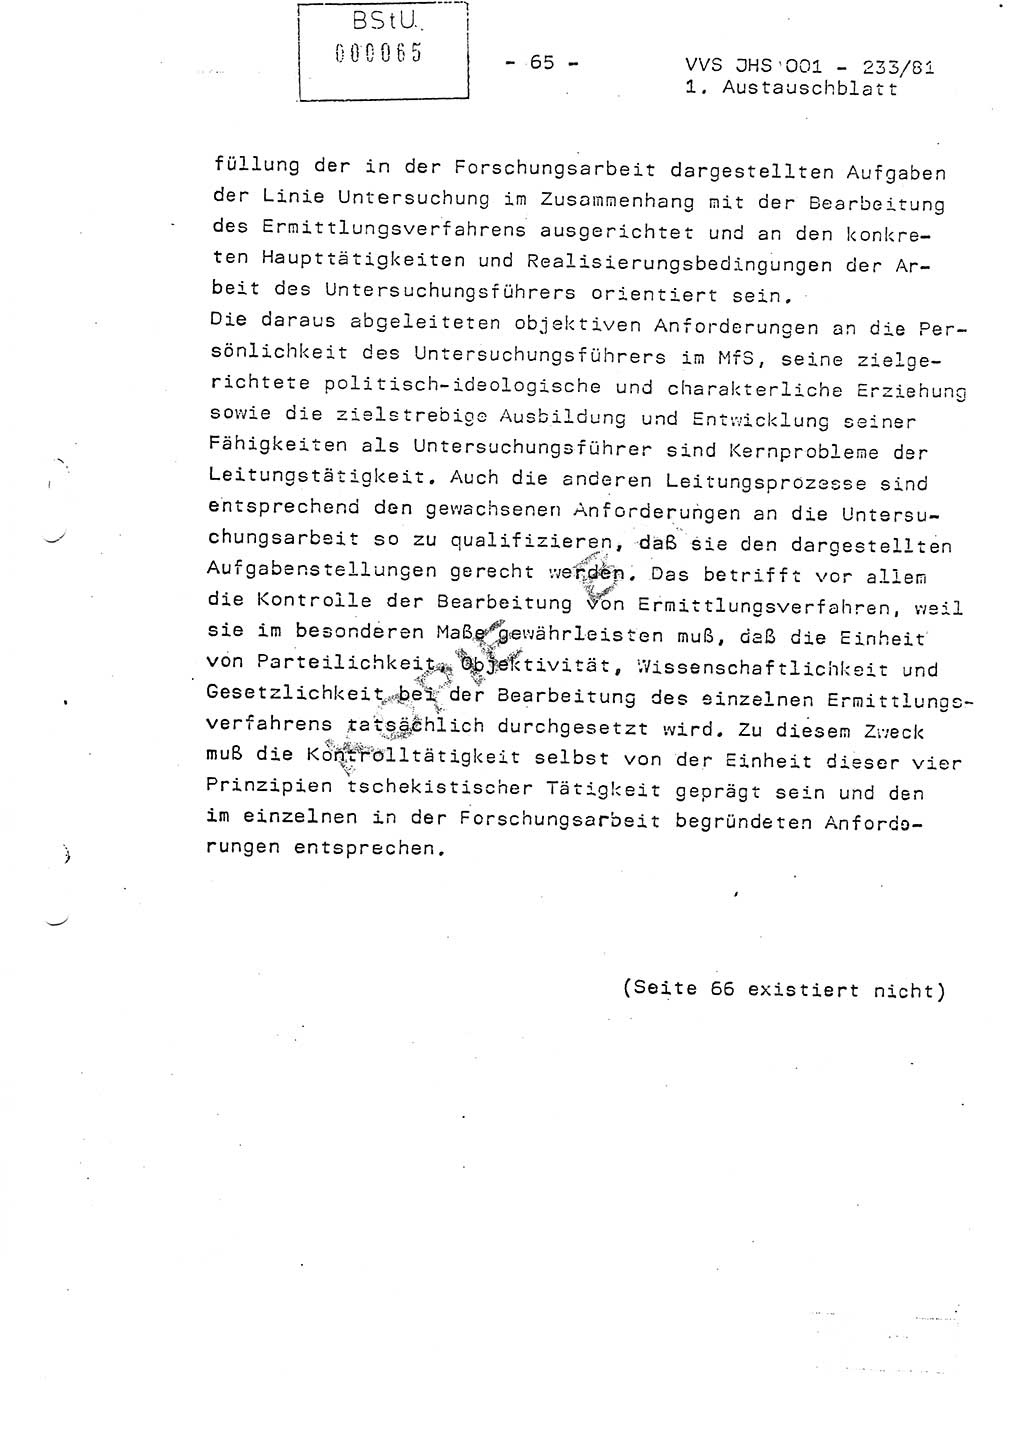 Dissertation Oberstleutnant Horst Zank (JHS), Oberstleutnant Dr. Karl-Heinz Knoblauch (JHS), Oberstleutnant Gustav-Adolf Kowalewski (HA Ⅸ), Oberstleutnant Wolfgang Plötner (HA Ⅸ), Ministerium für Staatssicherheit (MfS) [Deutsche Demokratische Republik (DDR)], Juristische Hochschule (JHS), Vertrauliche Verschlußsache (VVS) o001-233/81, Potsdam 1981, Blatt 65 (Diss. MfS DDR JHS VVS o001-233/81 1981, Bl. 65)